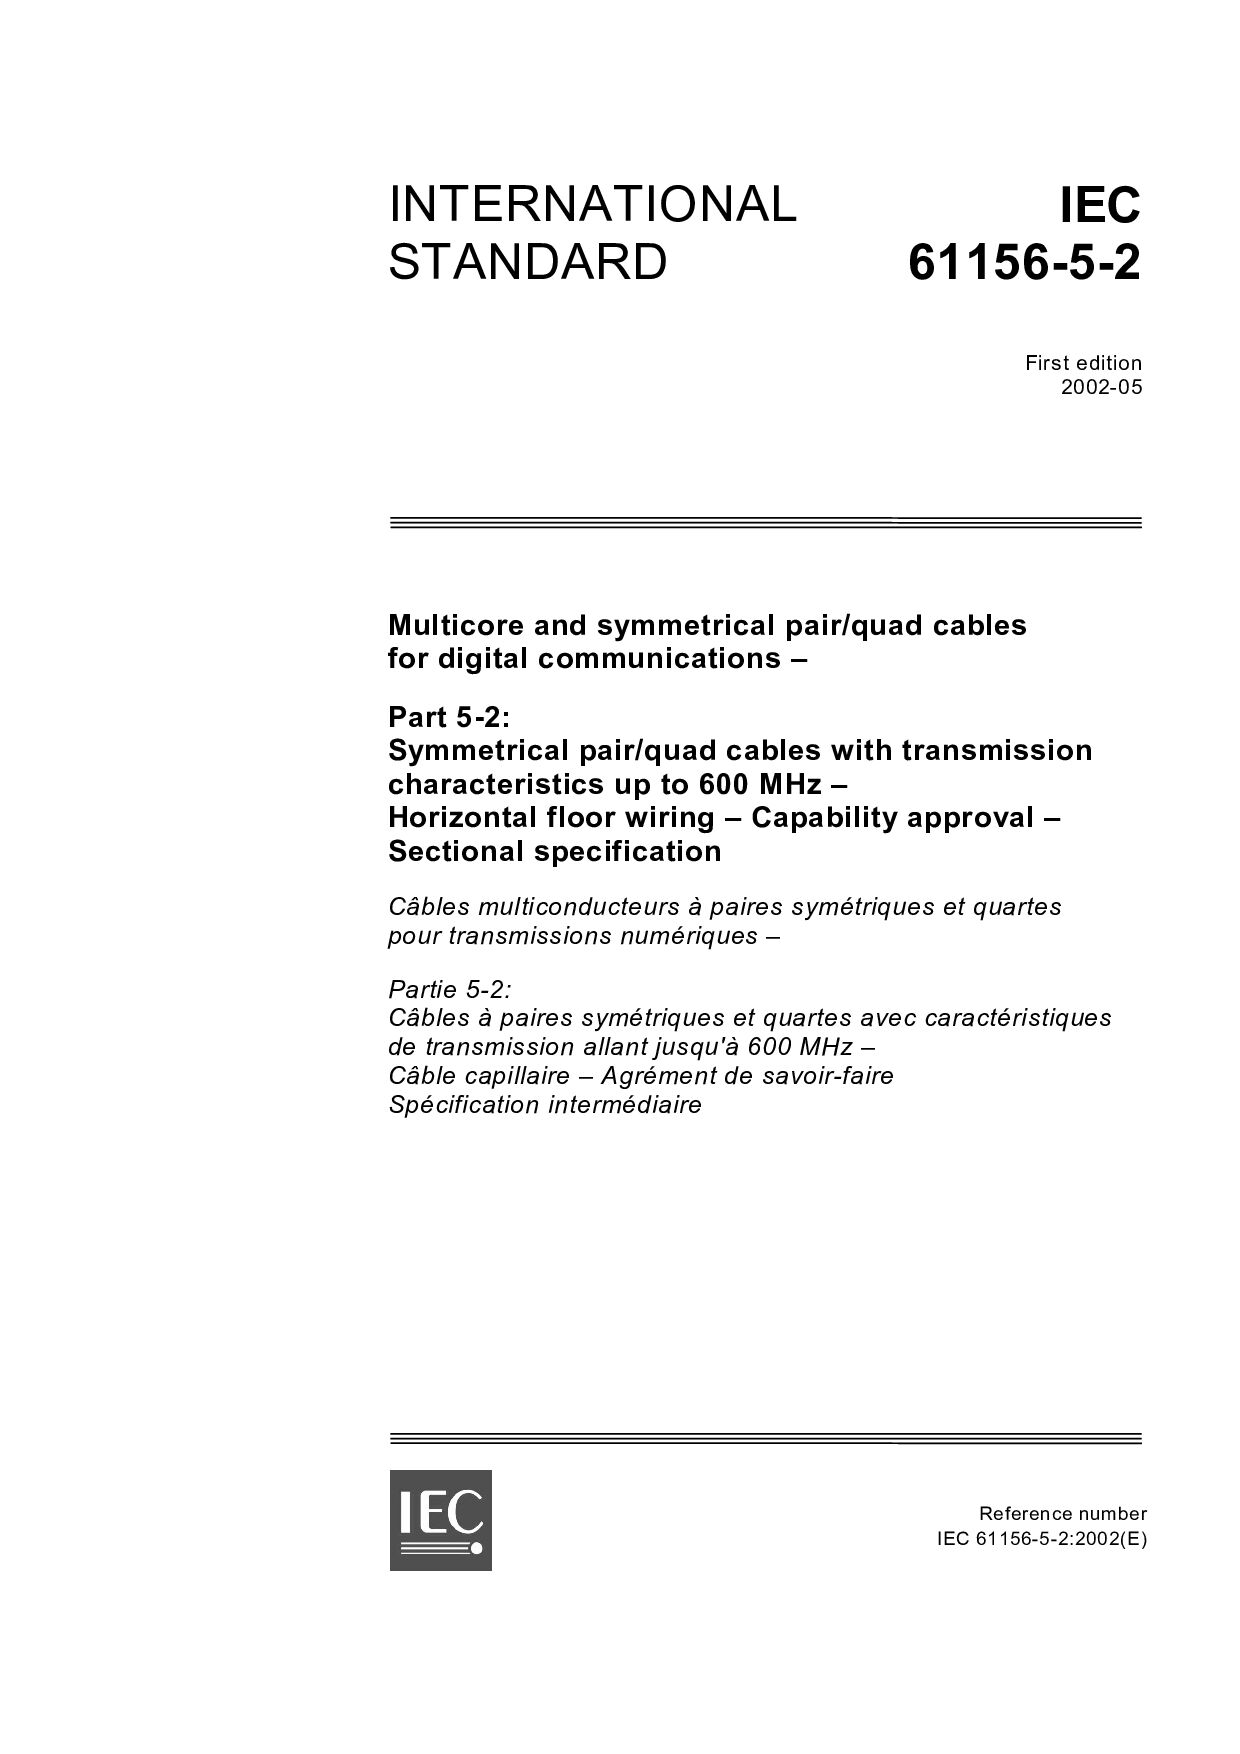 IEC 61156-5-2:2002封面图